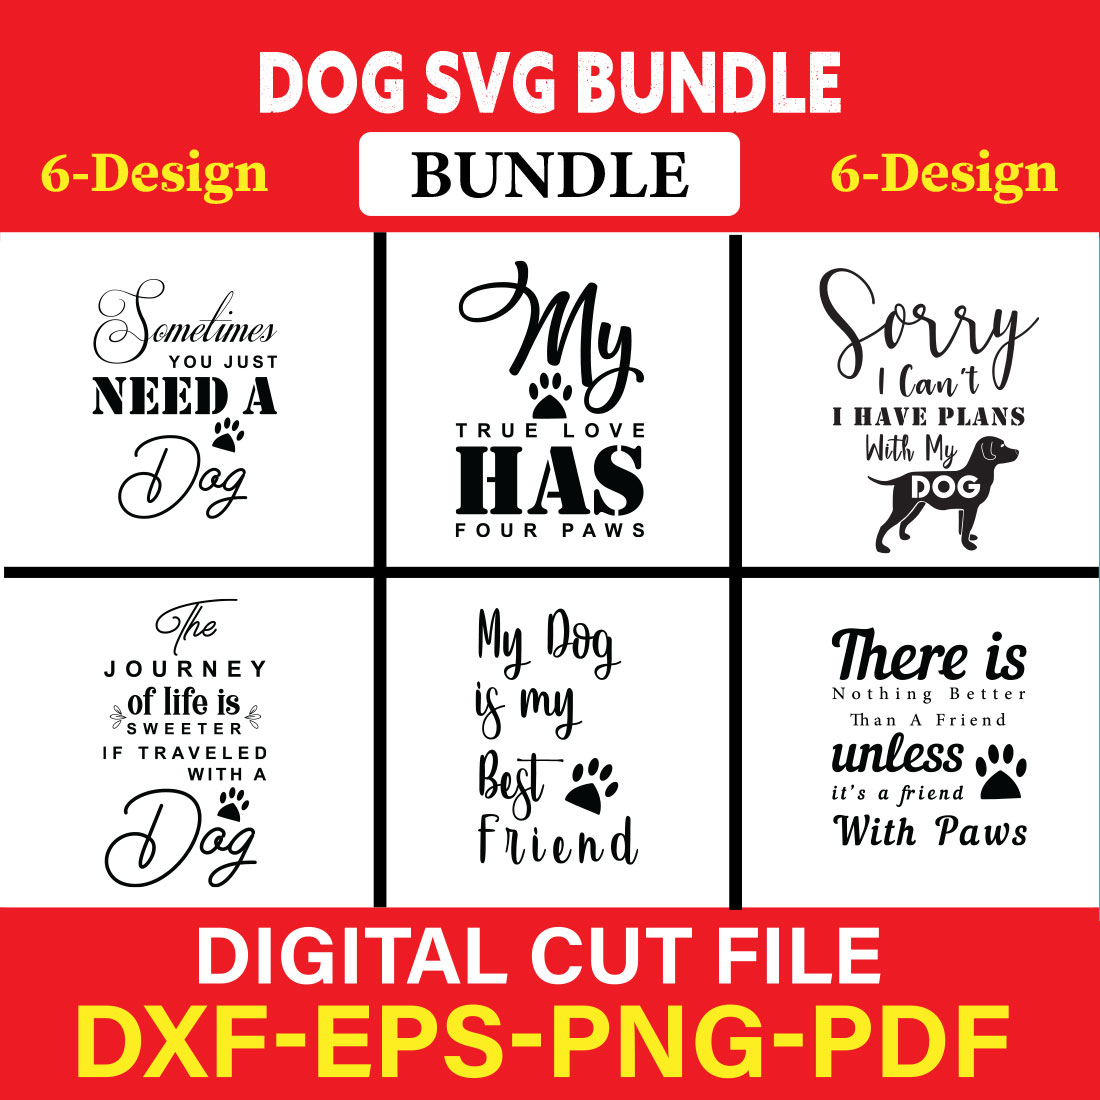 Dog T-shirt Design Bundle Vol-21 cover image.